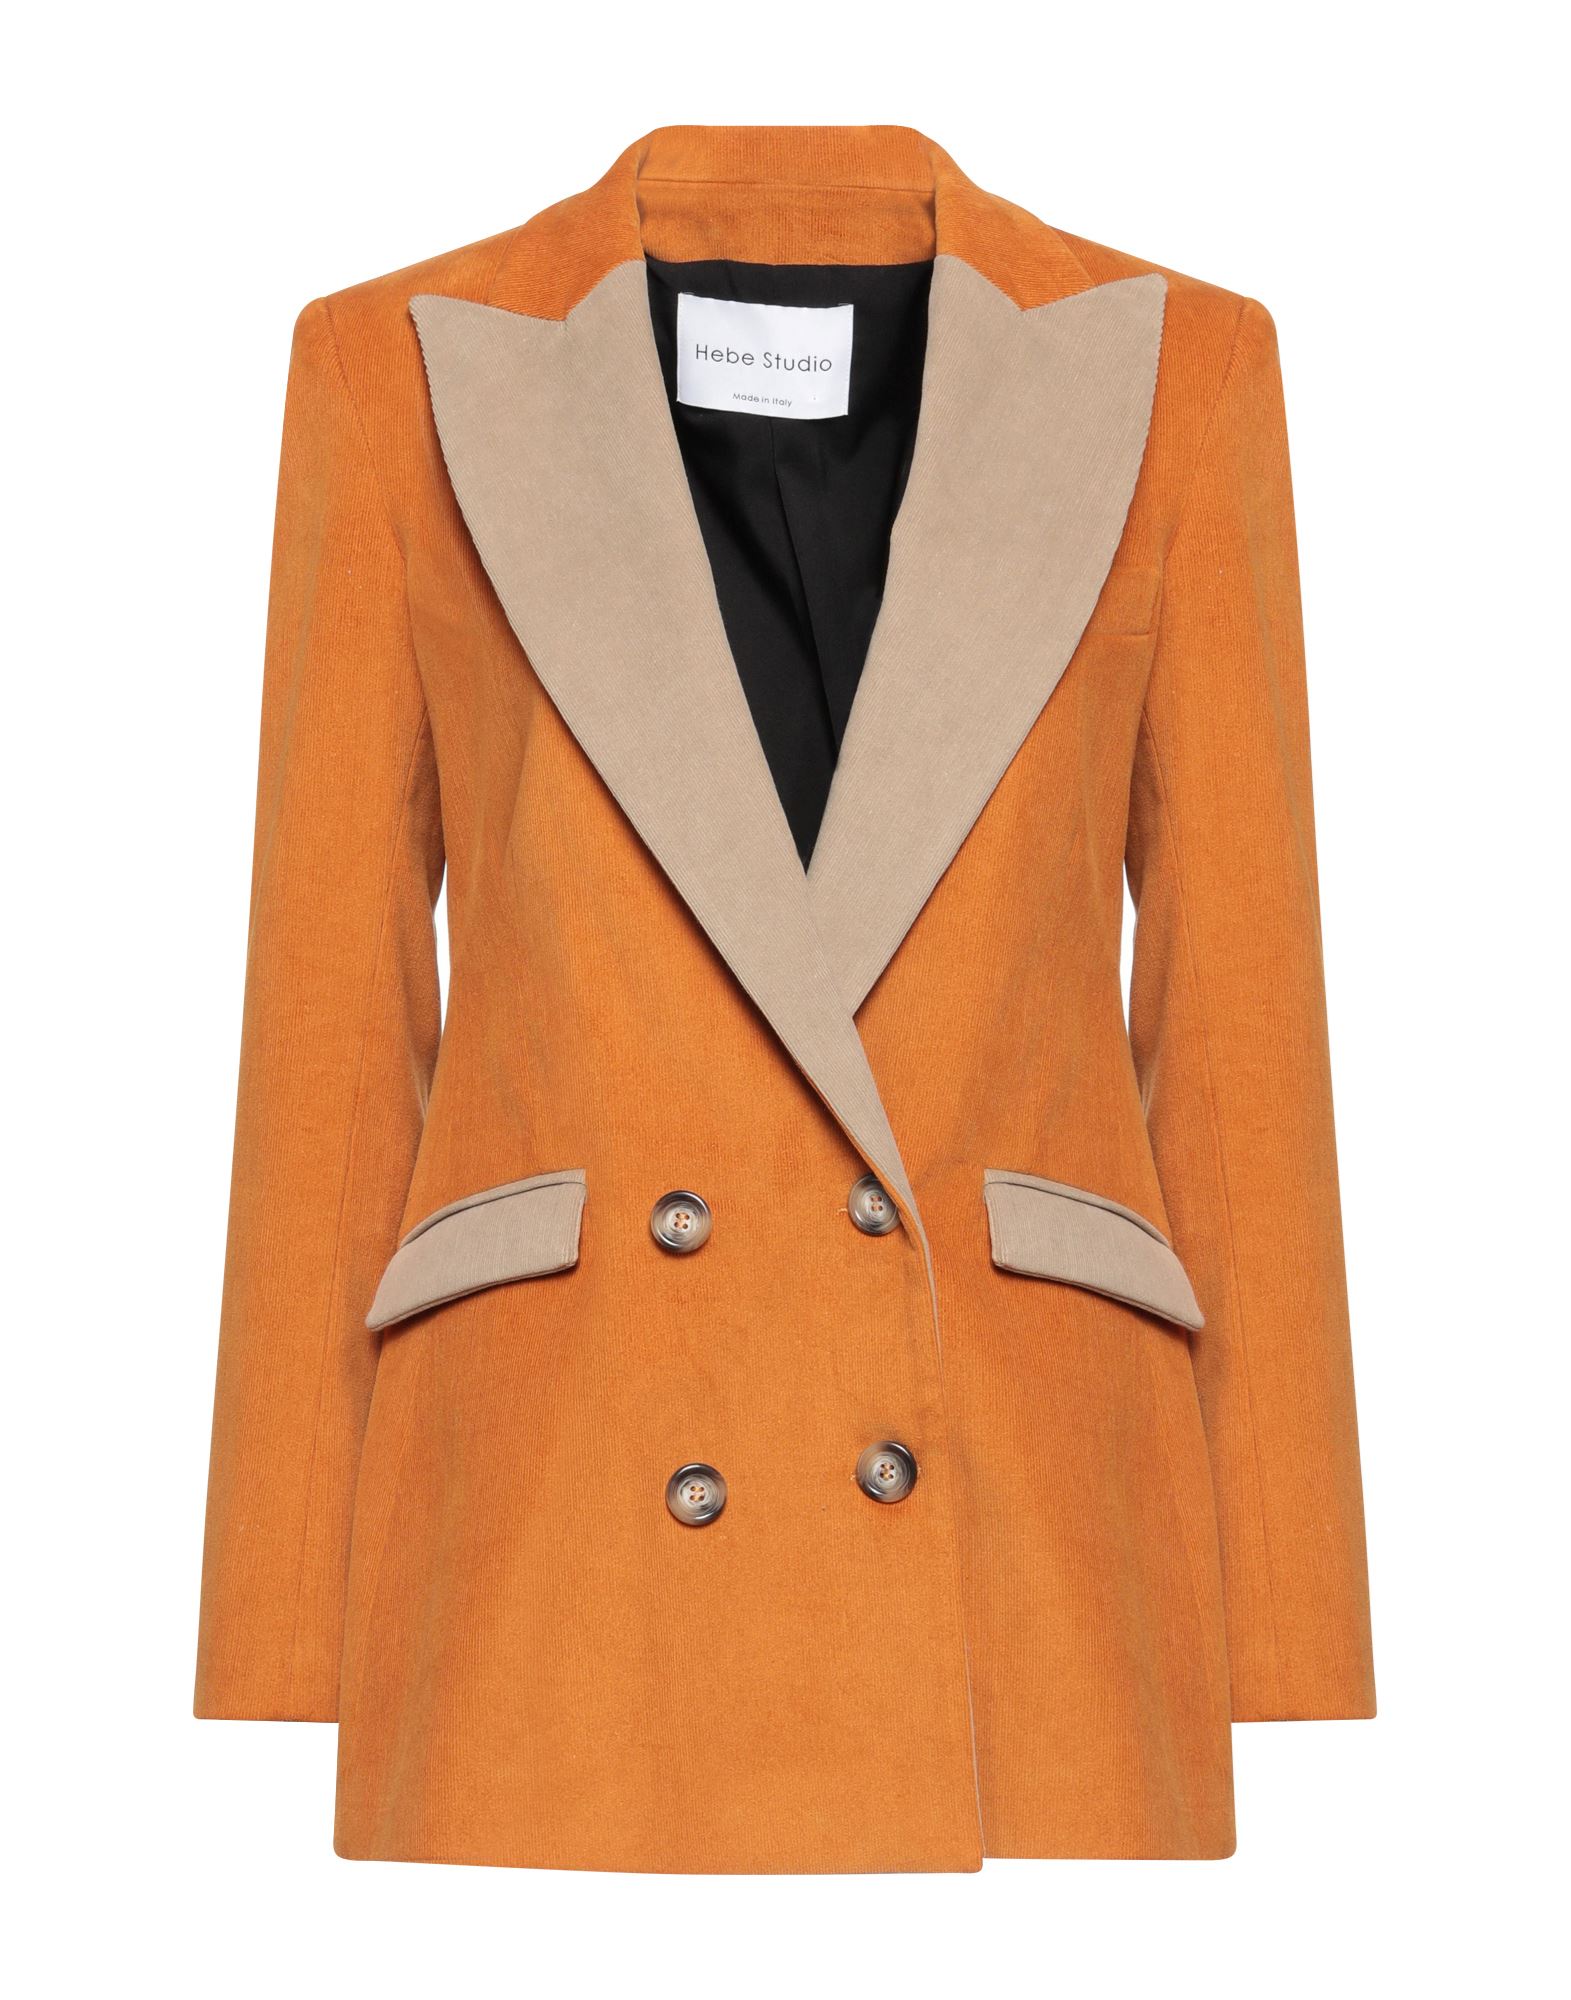 Hebe Studio Suit Jackets In Orange